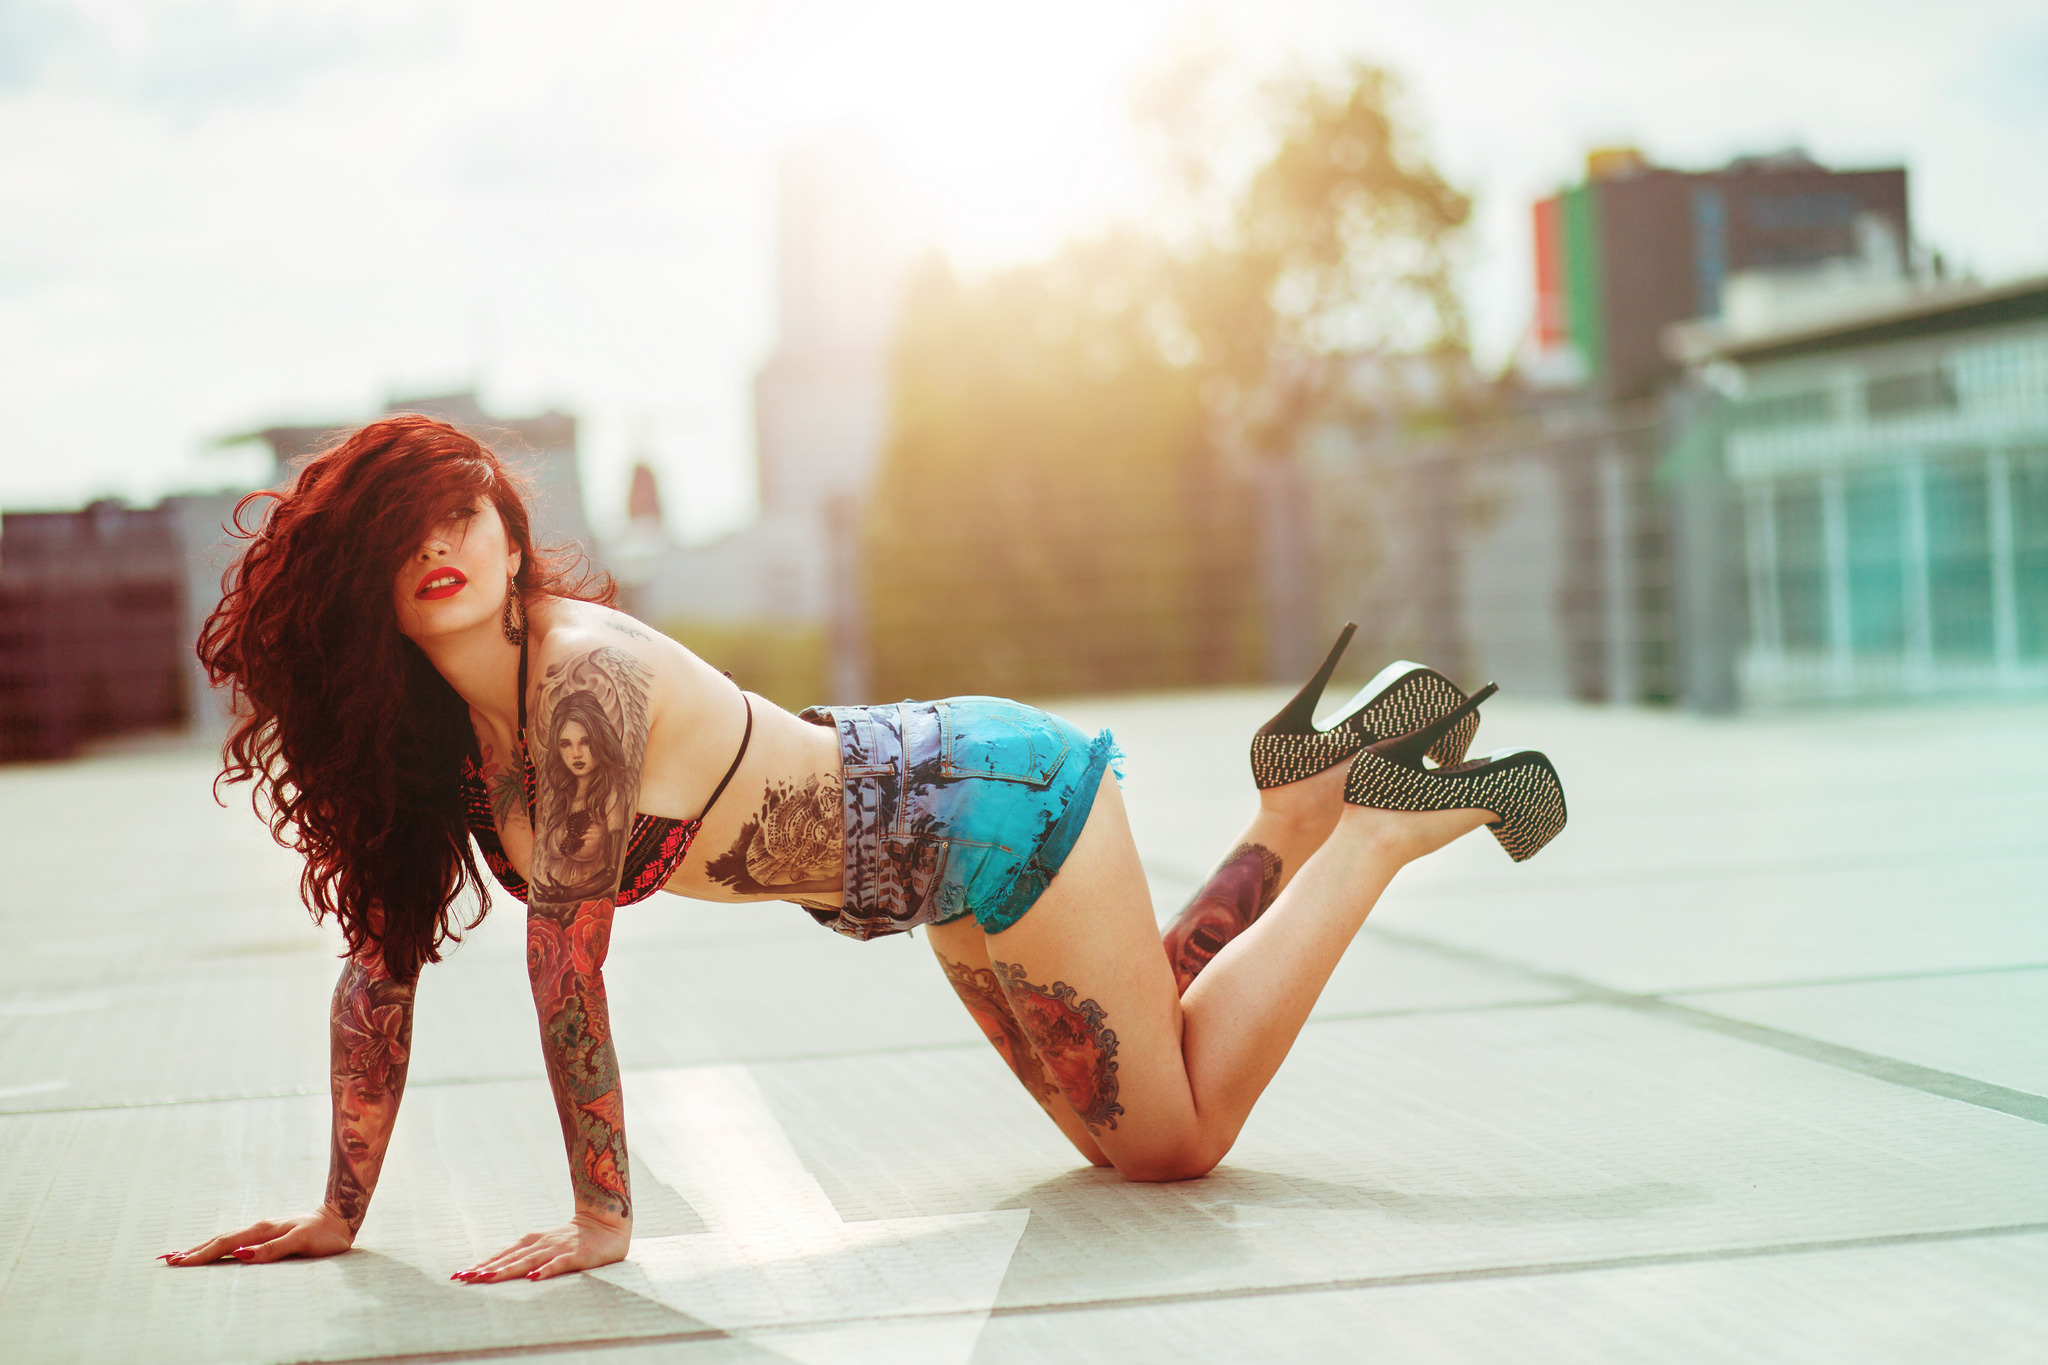 Красивая девушка с татуировками позирует в трусиках